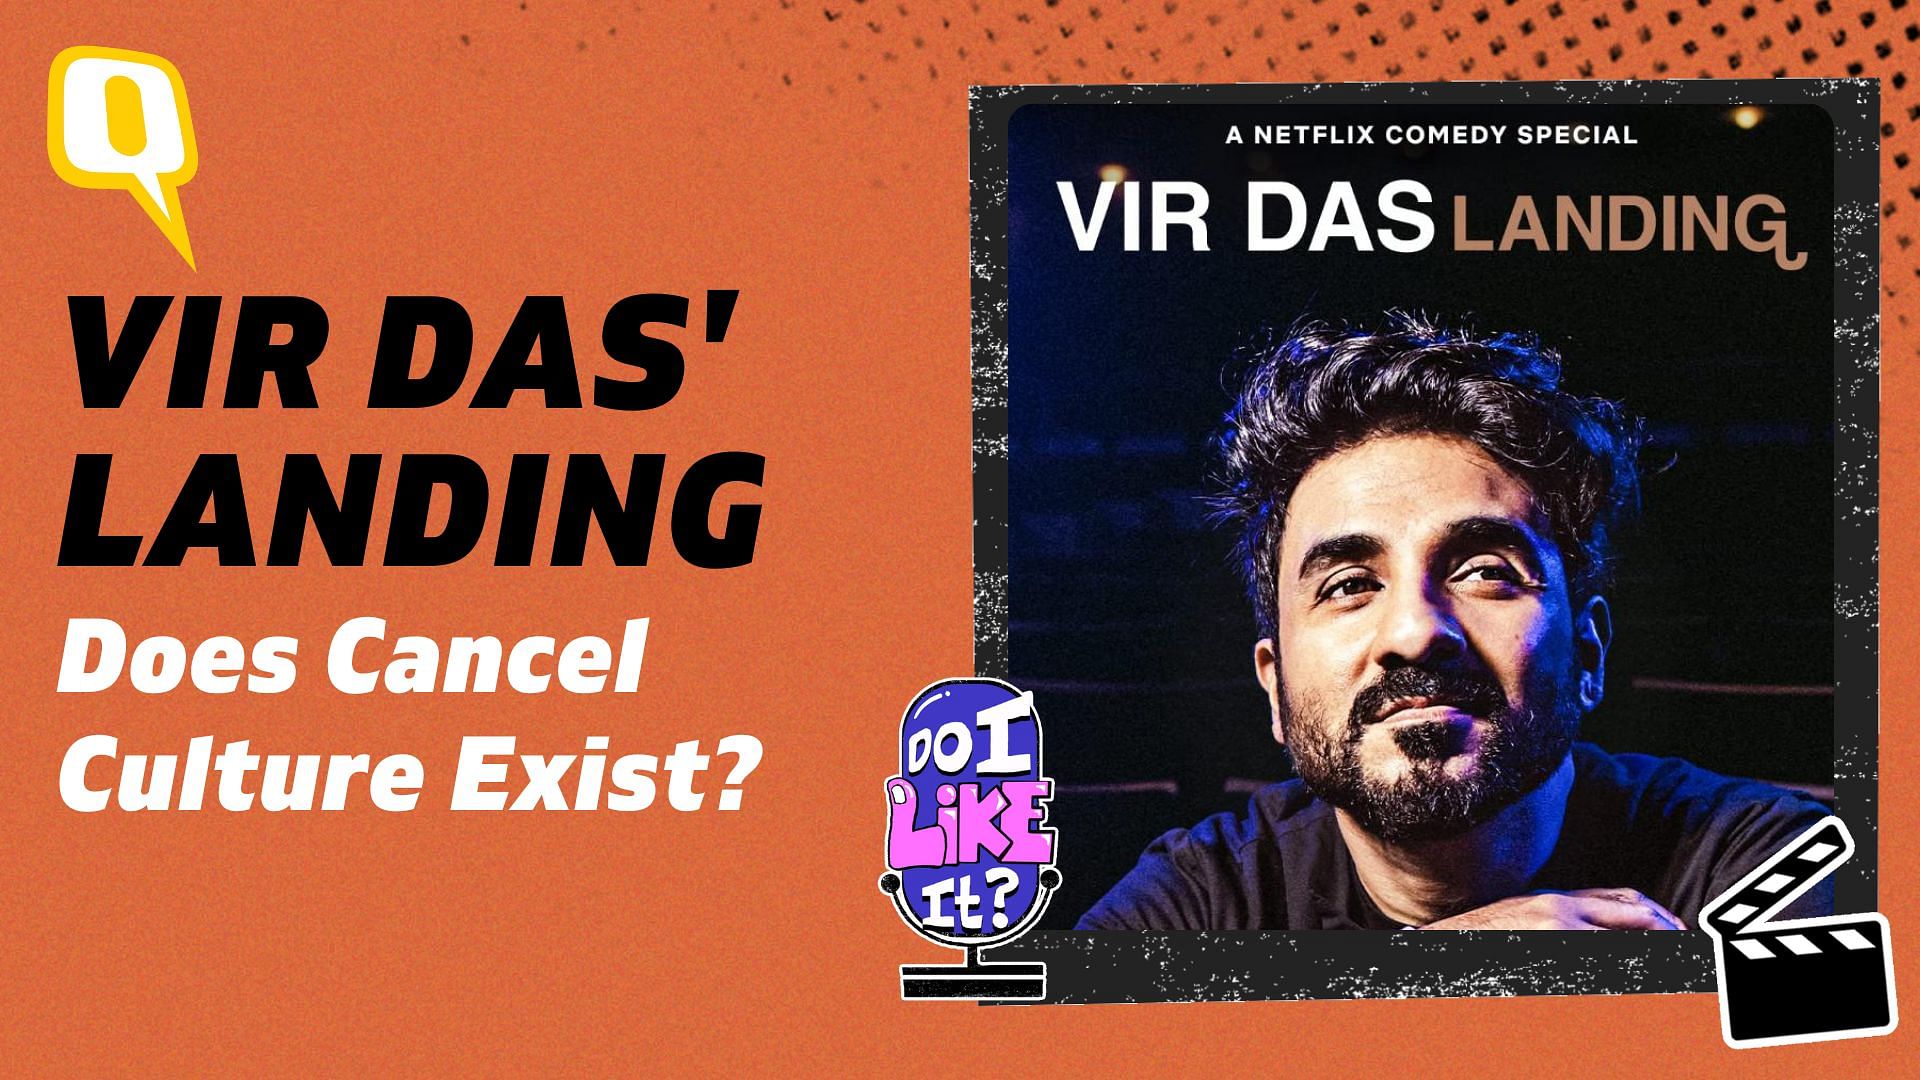 <div class="paragraphs"><p>Pratikshya Mishra reviews Vir Das: Landing</p></div>